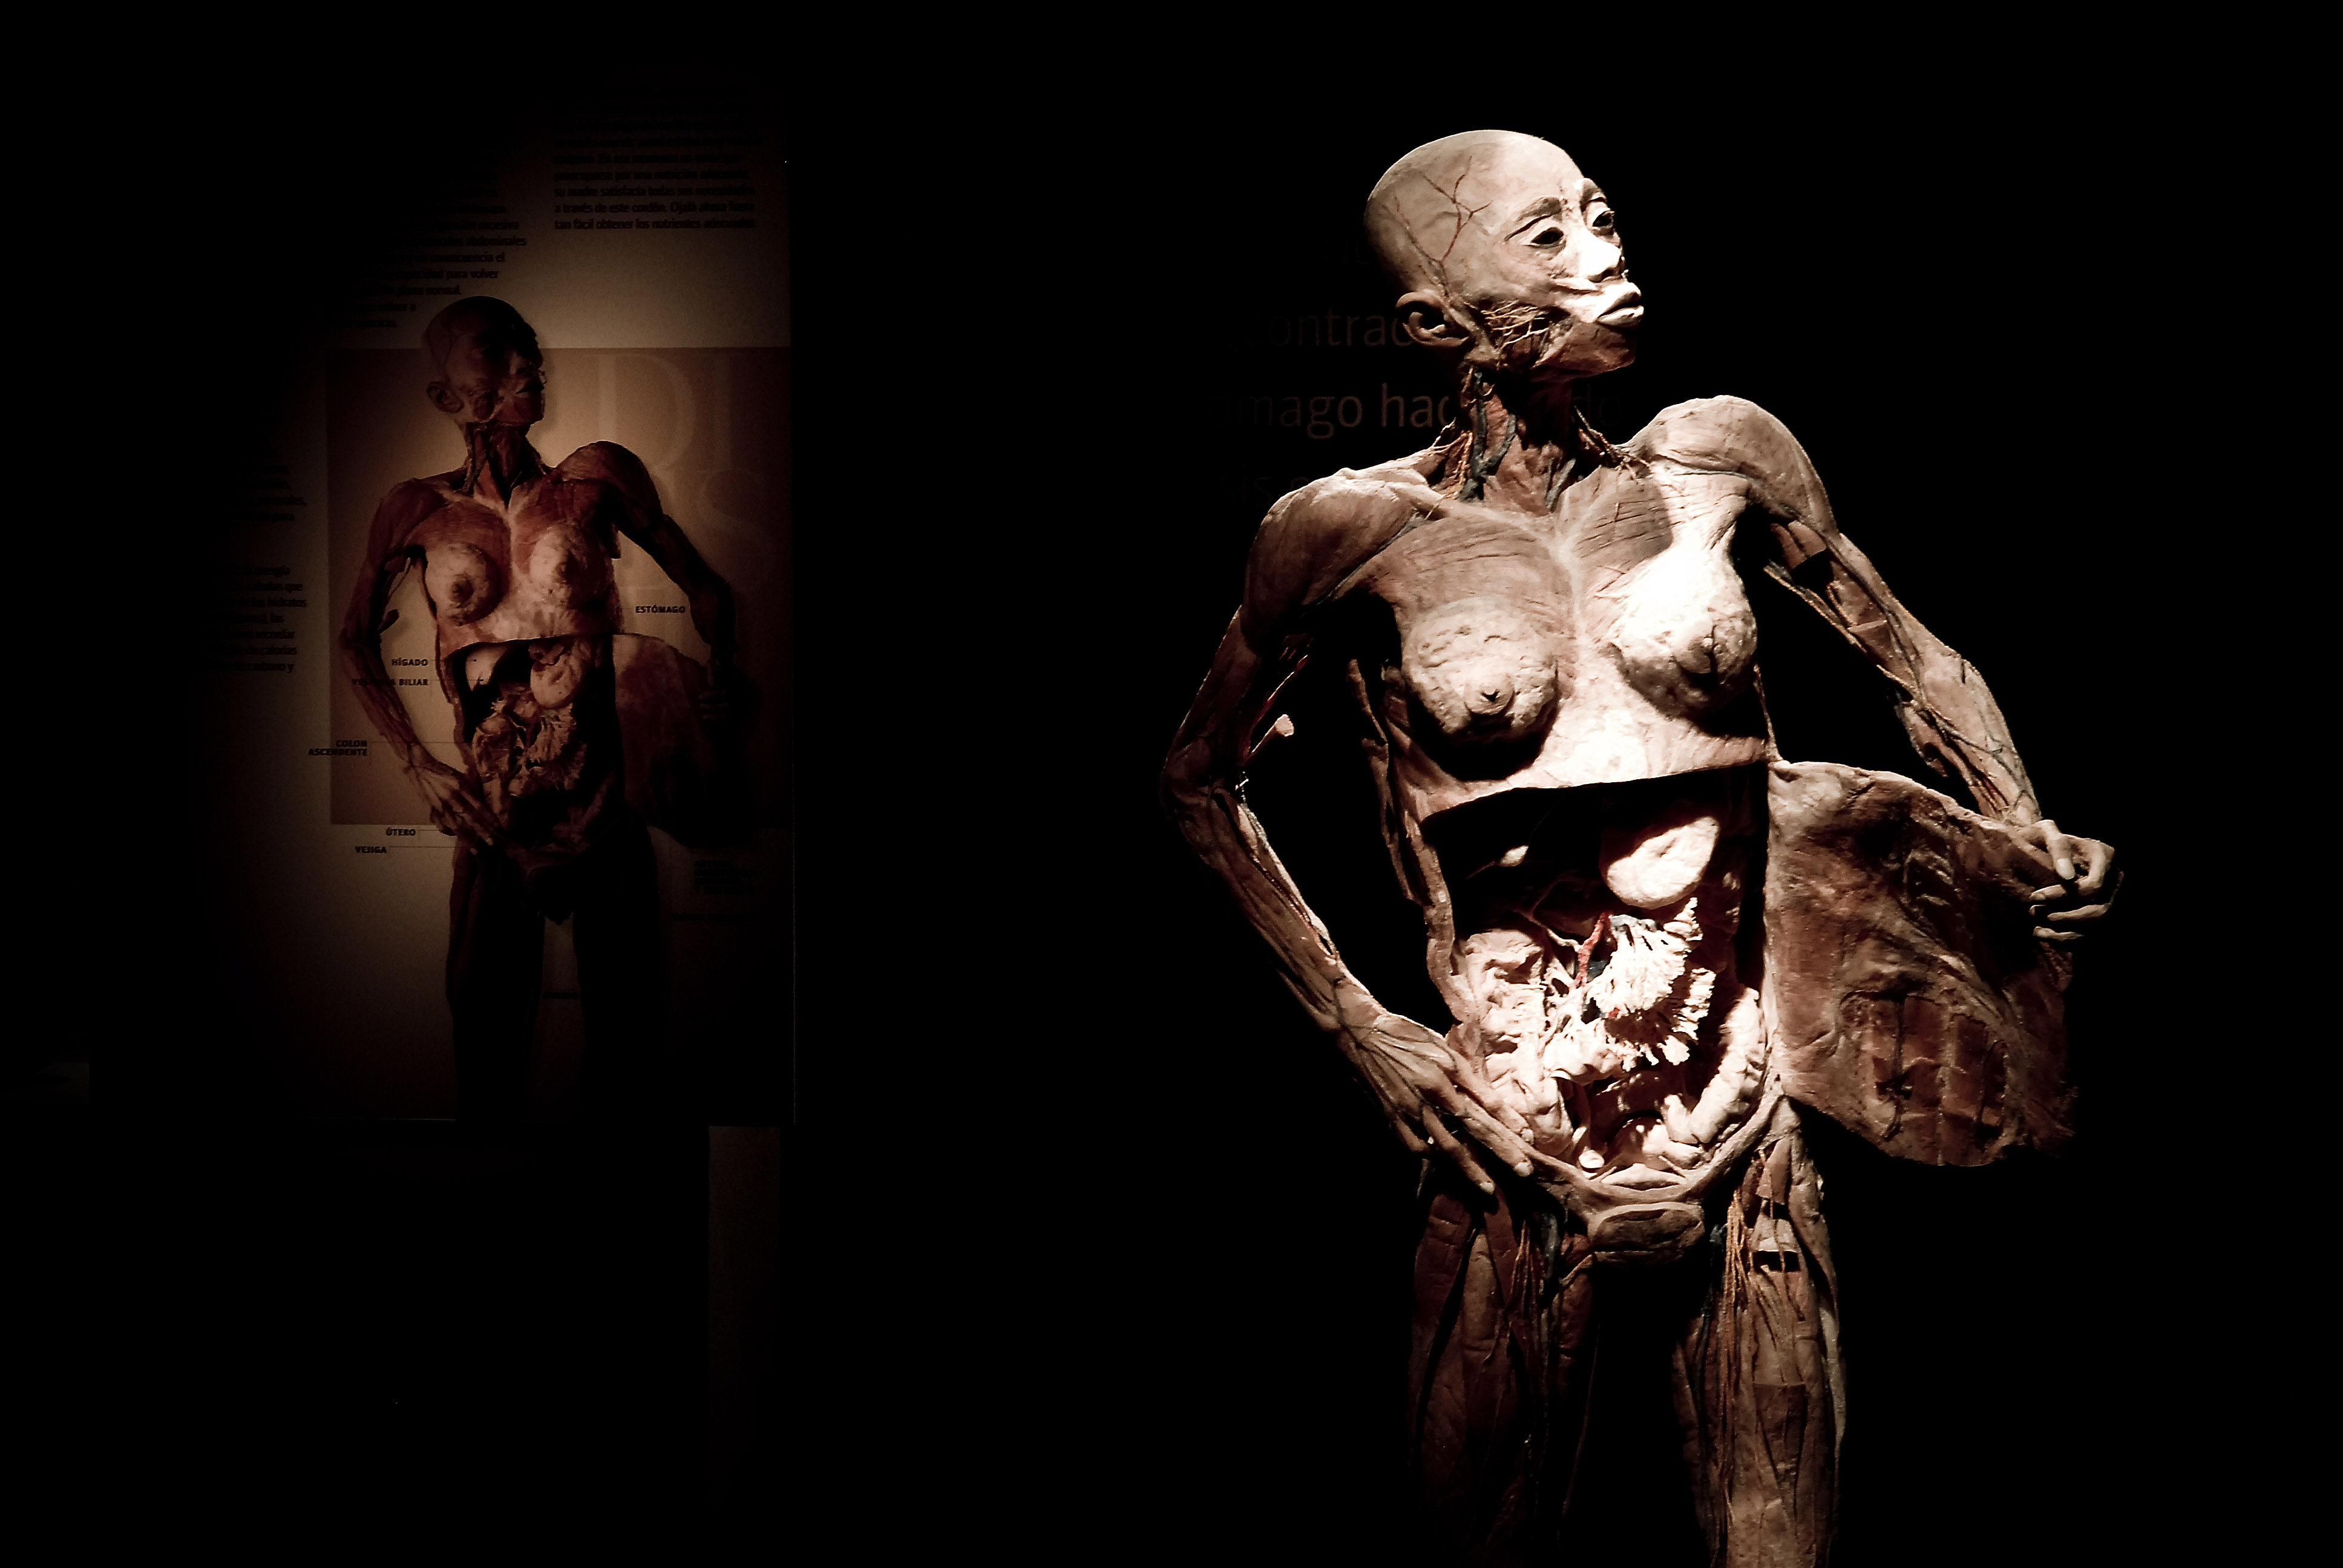 Exposição "O Fantástico Corpo Humano". Crédito: Divulgação da mostra